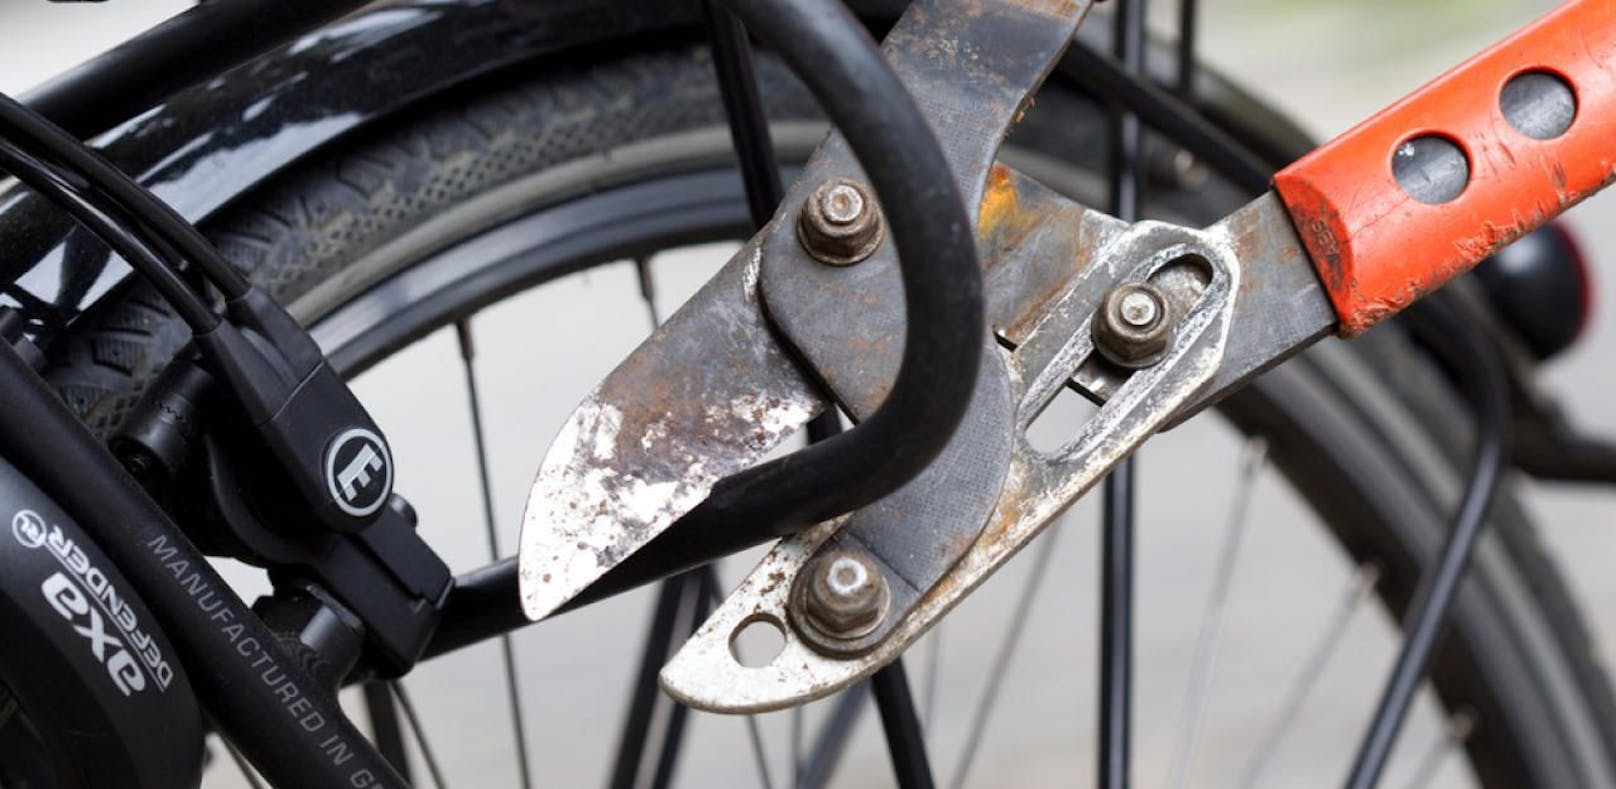 (Symbolbild): In Wien-Floridsdorf wurde ein ungeschickter Fahrraddieb festgenommen